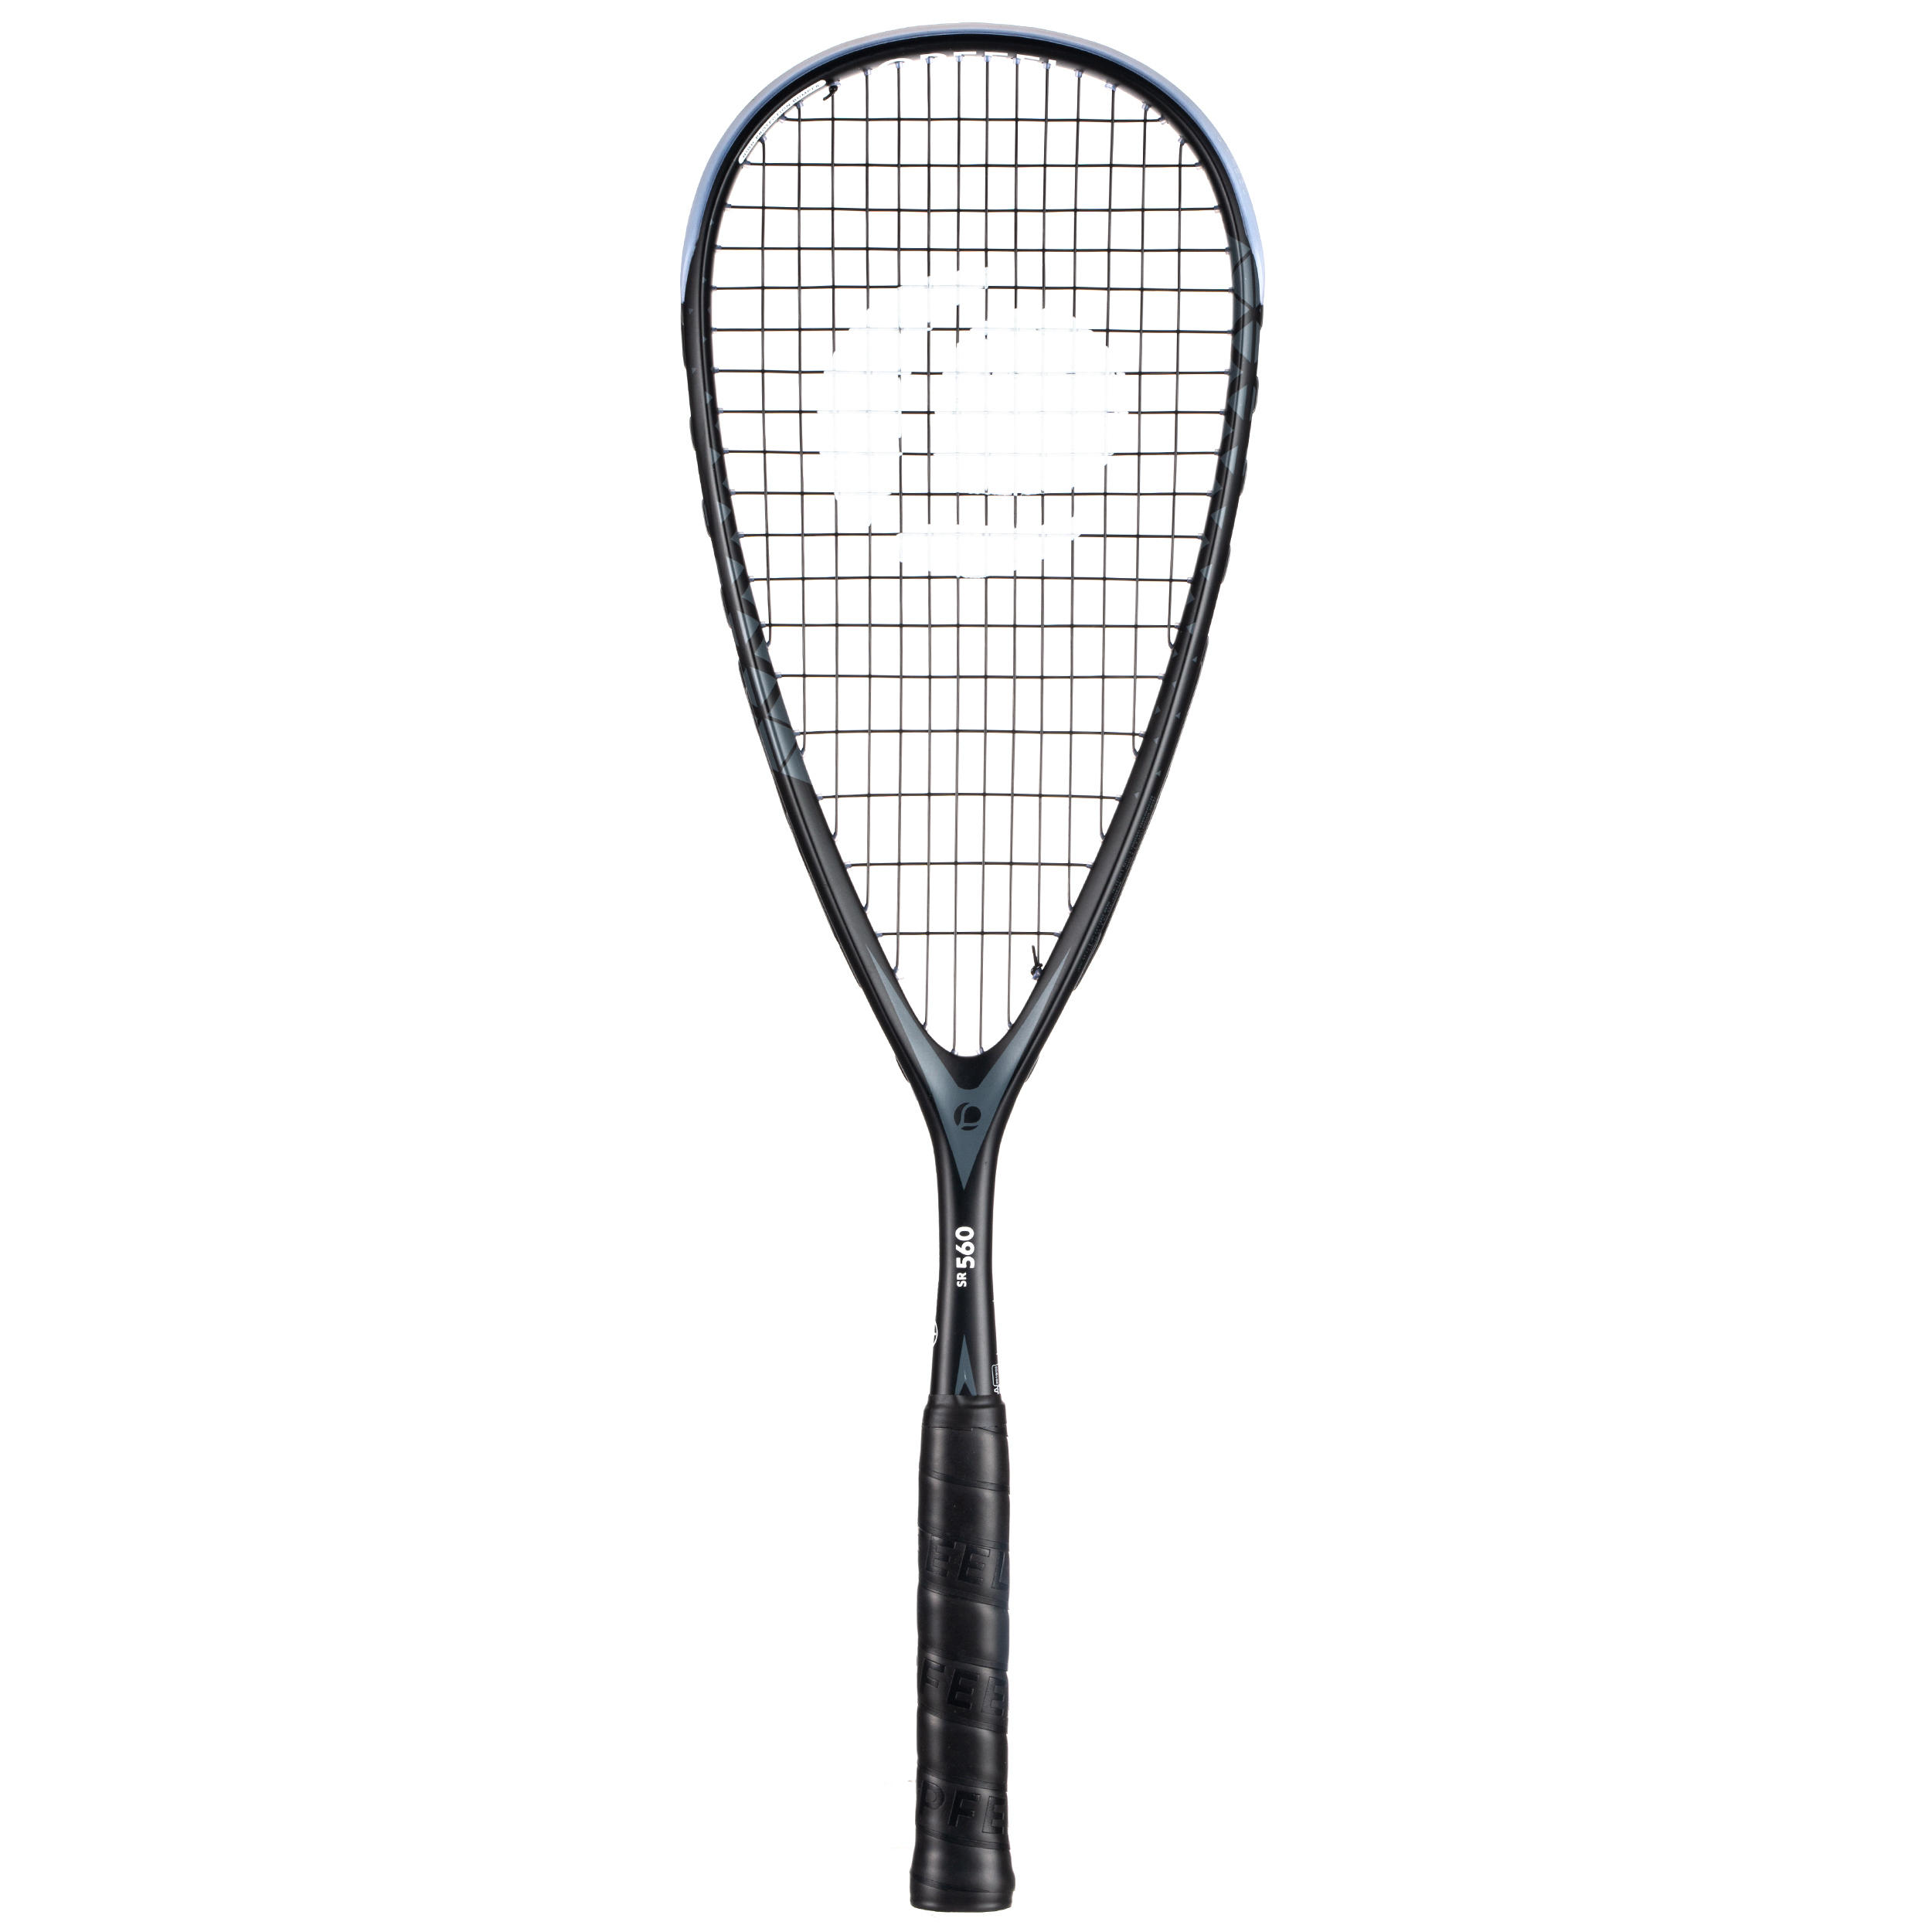 Rachetă Squash SR560 – 145 g